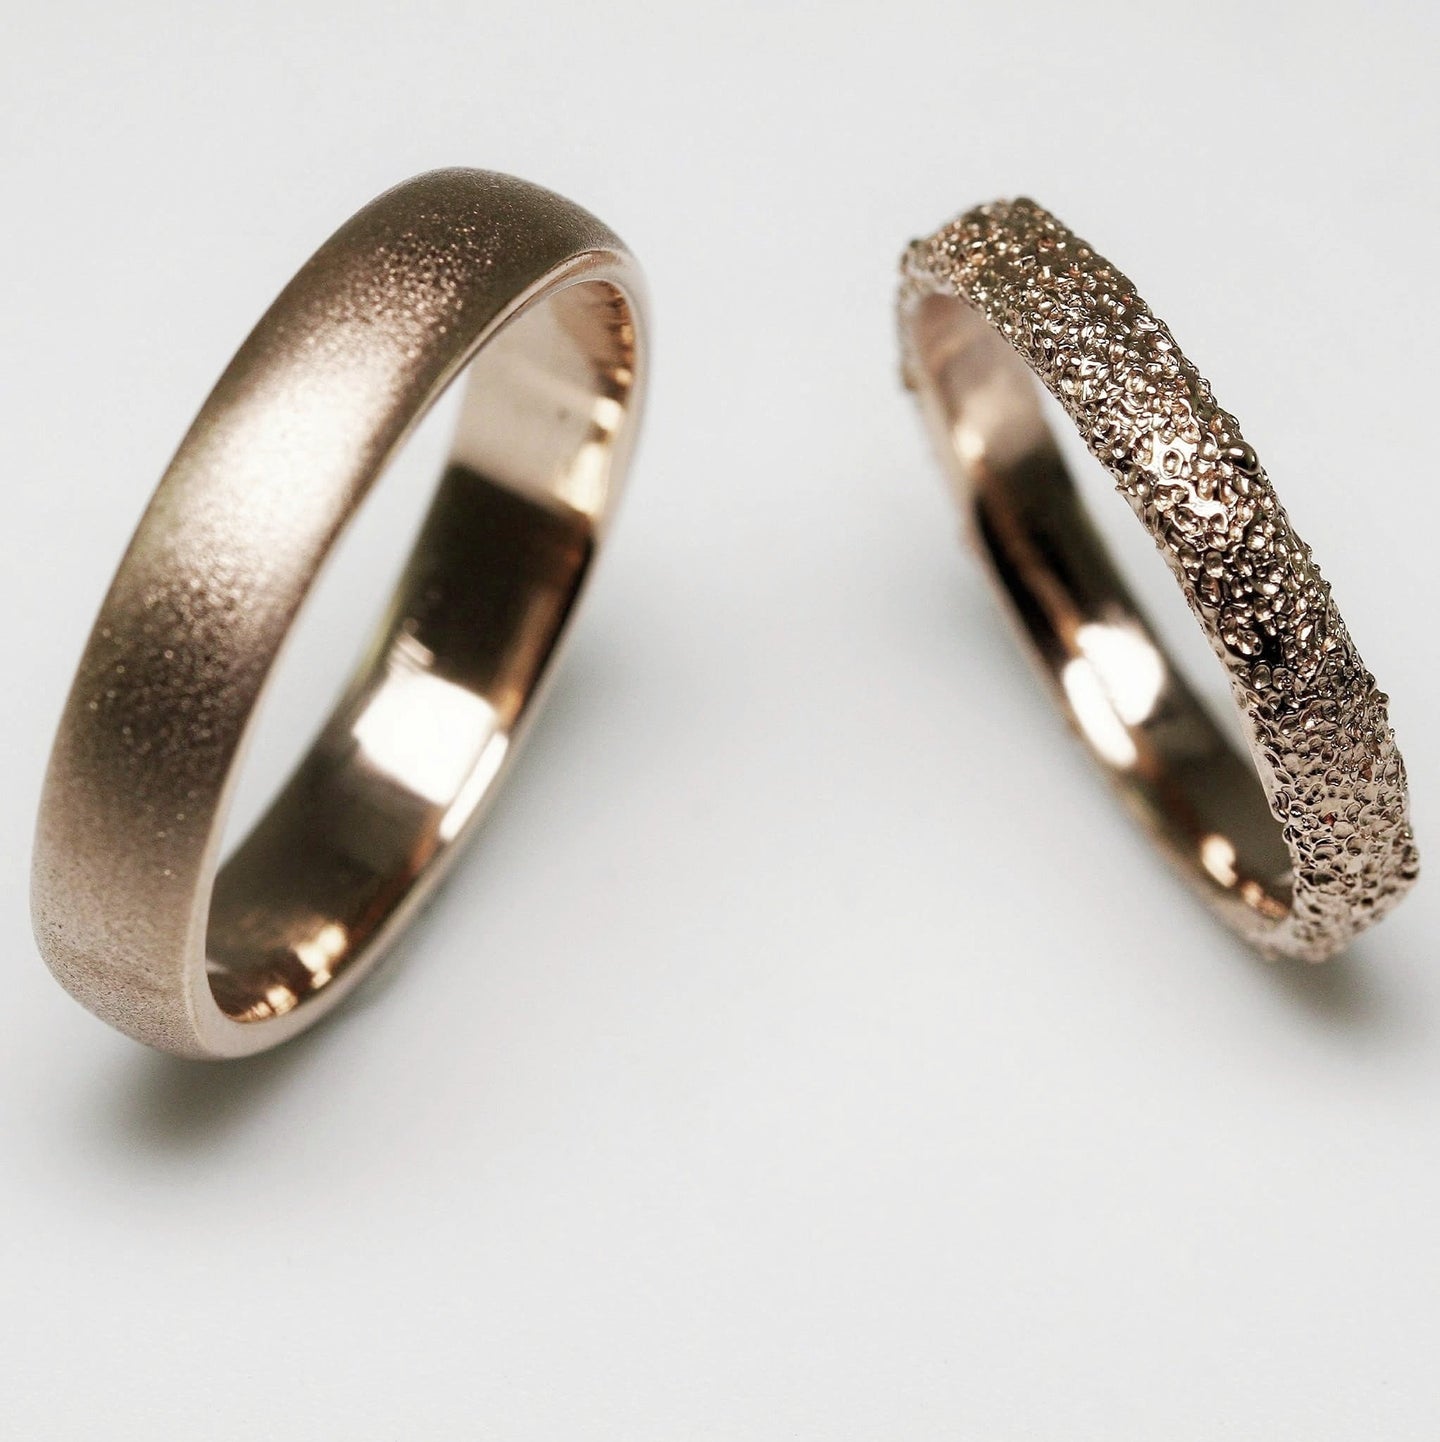 Bespoke Custom Designed Wedding Rings Australia | Eliise Maar Jewellery - Eliise Maar Jewellery